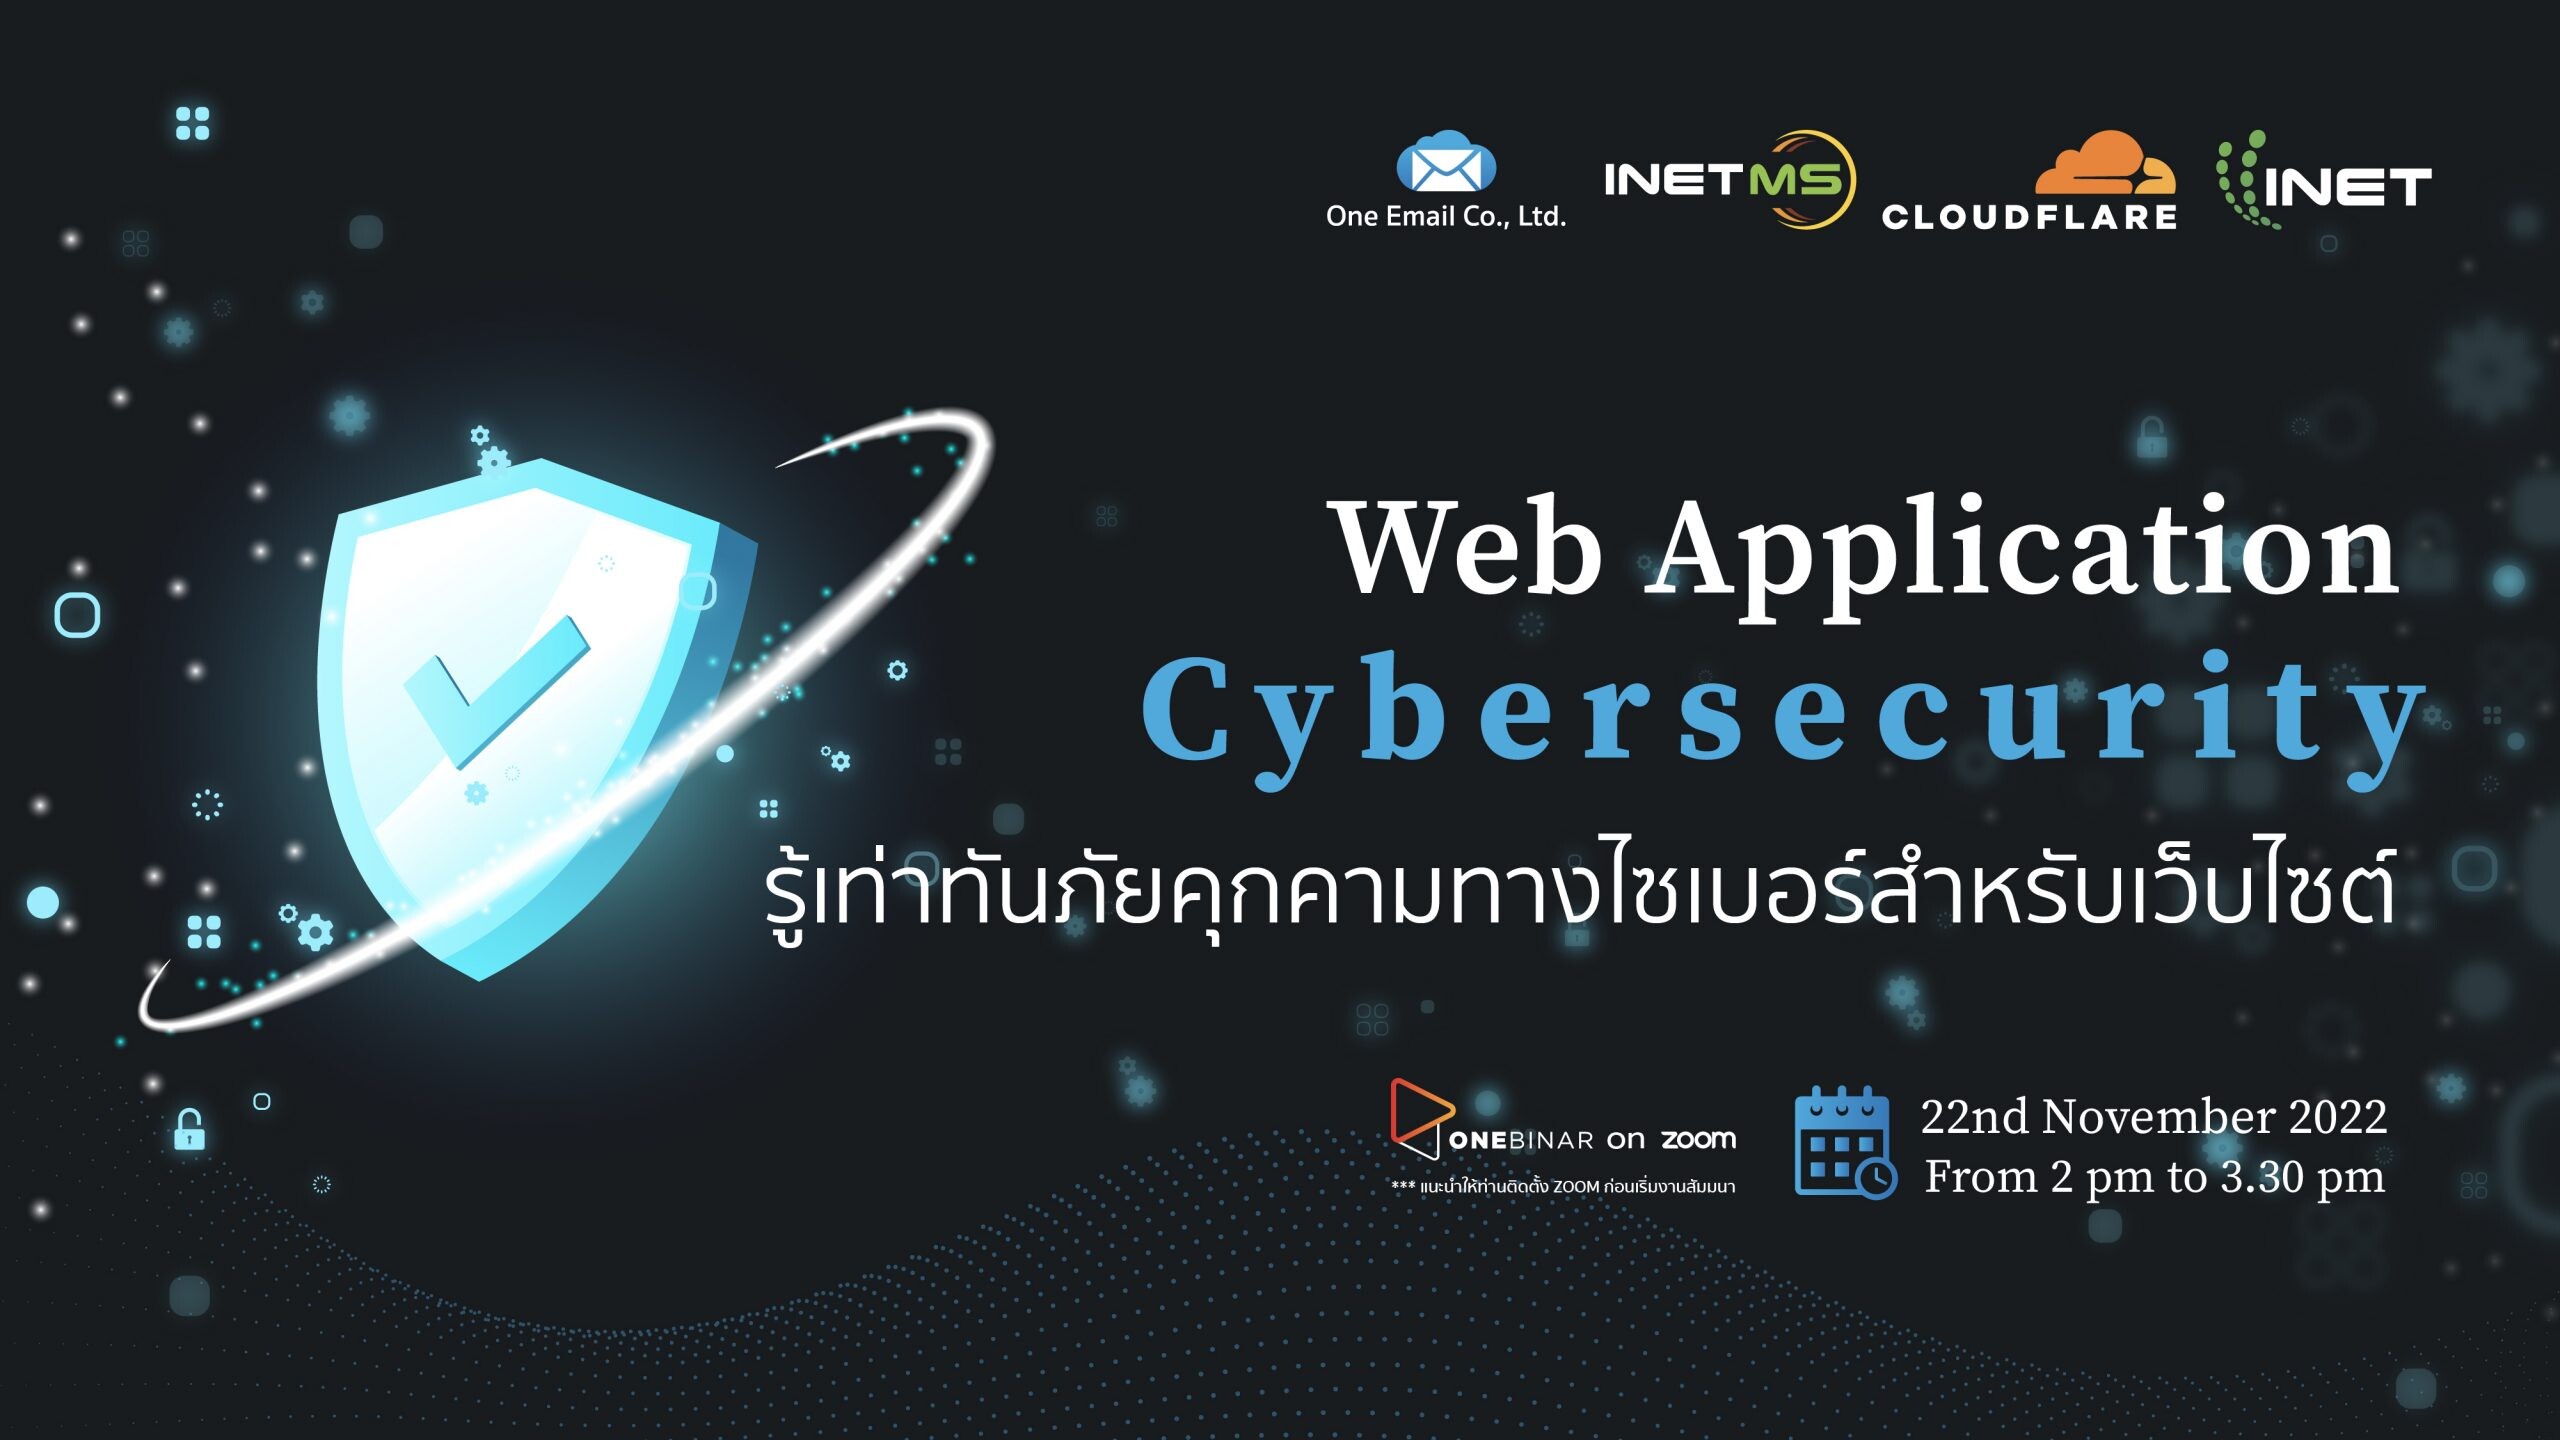 งานสัมมนาออนไลน์ ลงทะเบียนฟรี ผ่าน Onebinar หัวข้อ " Web Application Cybersecurity รู้เท่าทันภัยคุกคามทางไซเบอร์สำหรับเว็บไซต์ "